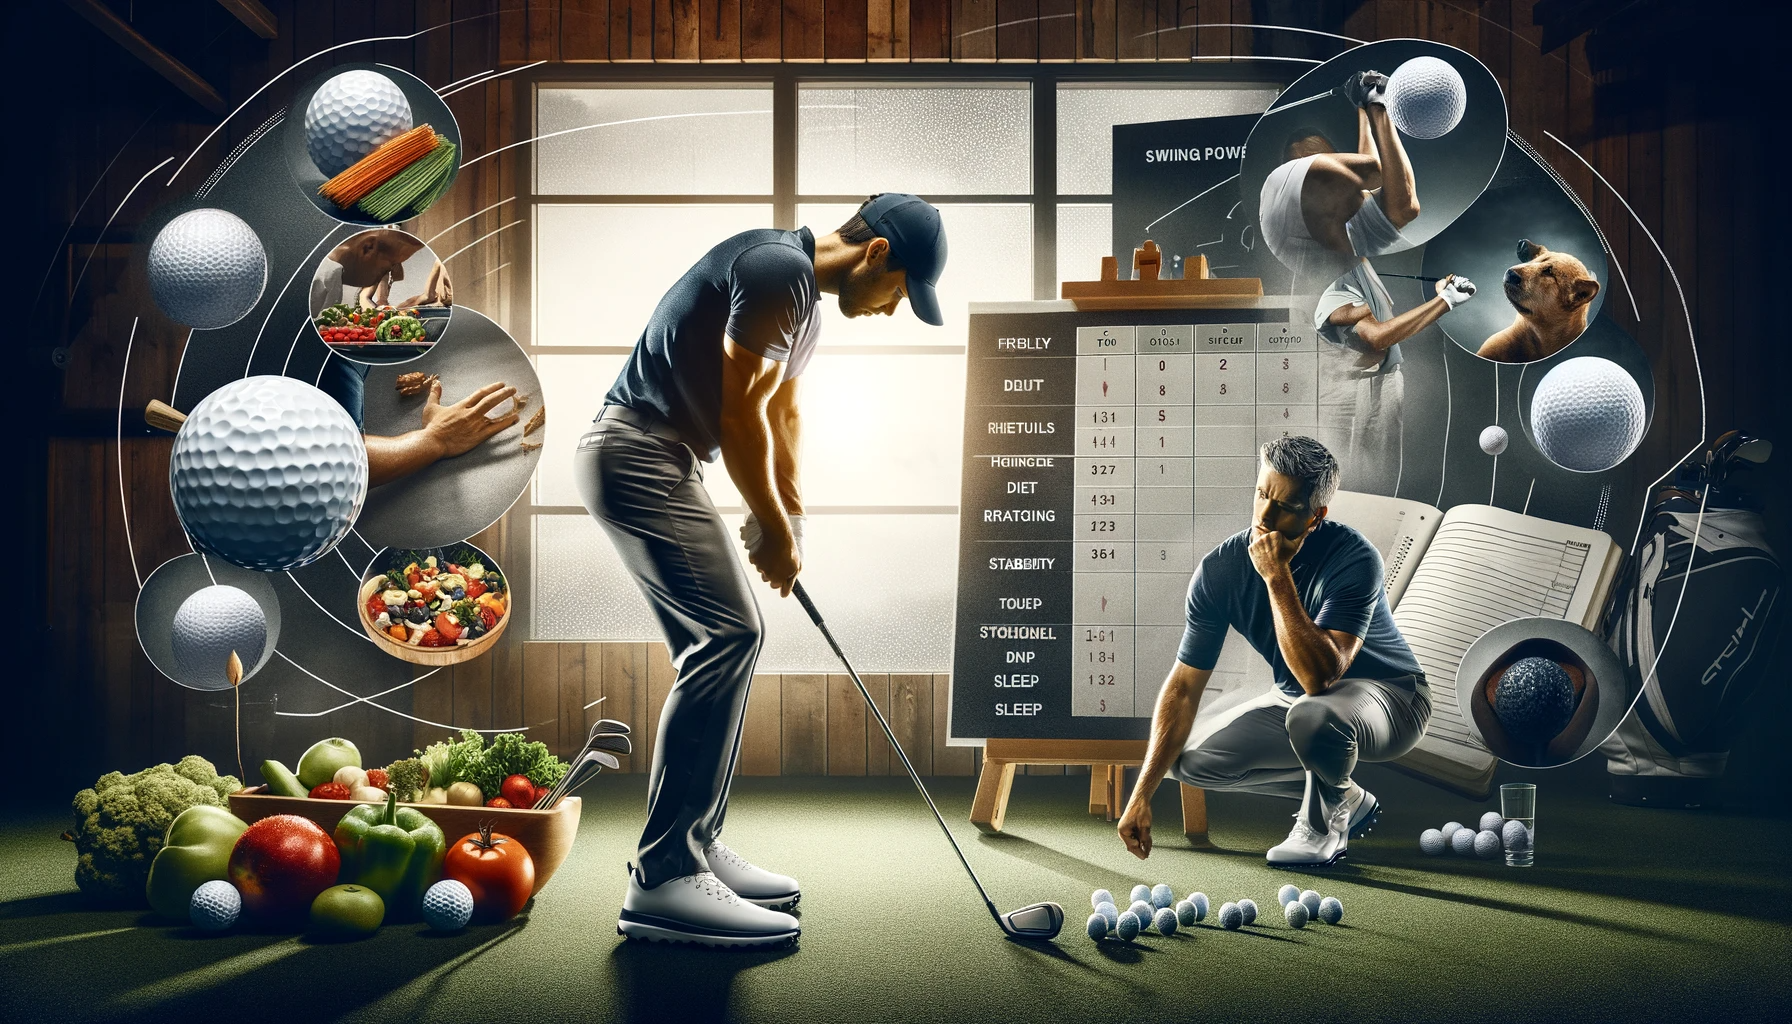 프로 골퍼들의 성공 비결과 골프 경기력 향상을 위한 핵심 전략 - 체력과 건강 유지&#44; 심리적인 강점